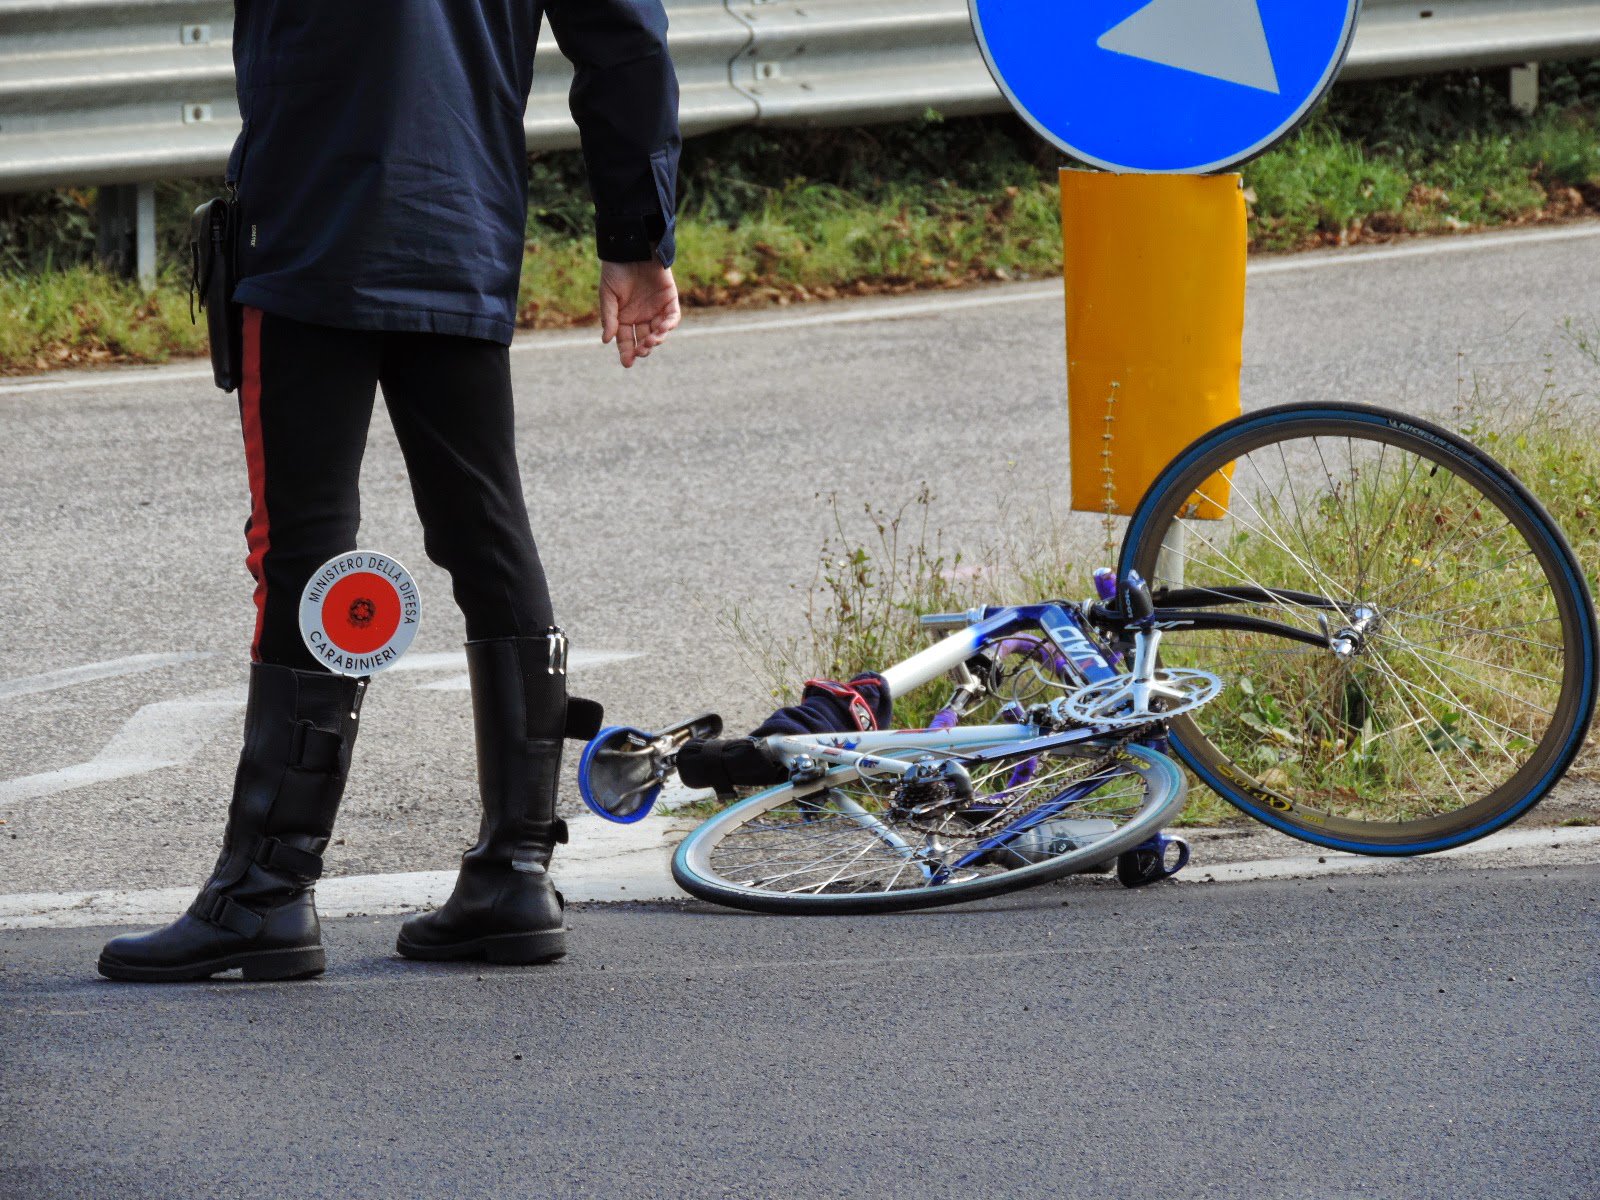 Investita sulla bici: grave una 55enne nel Napoletano